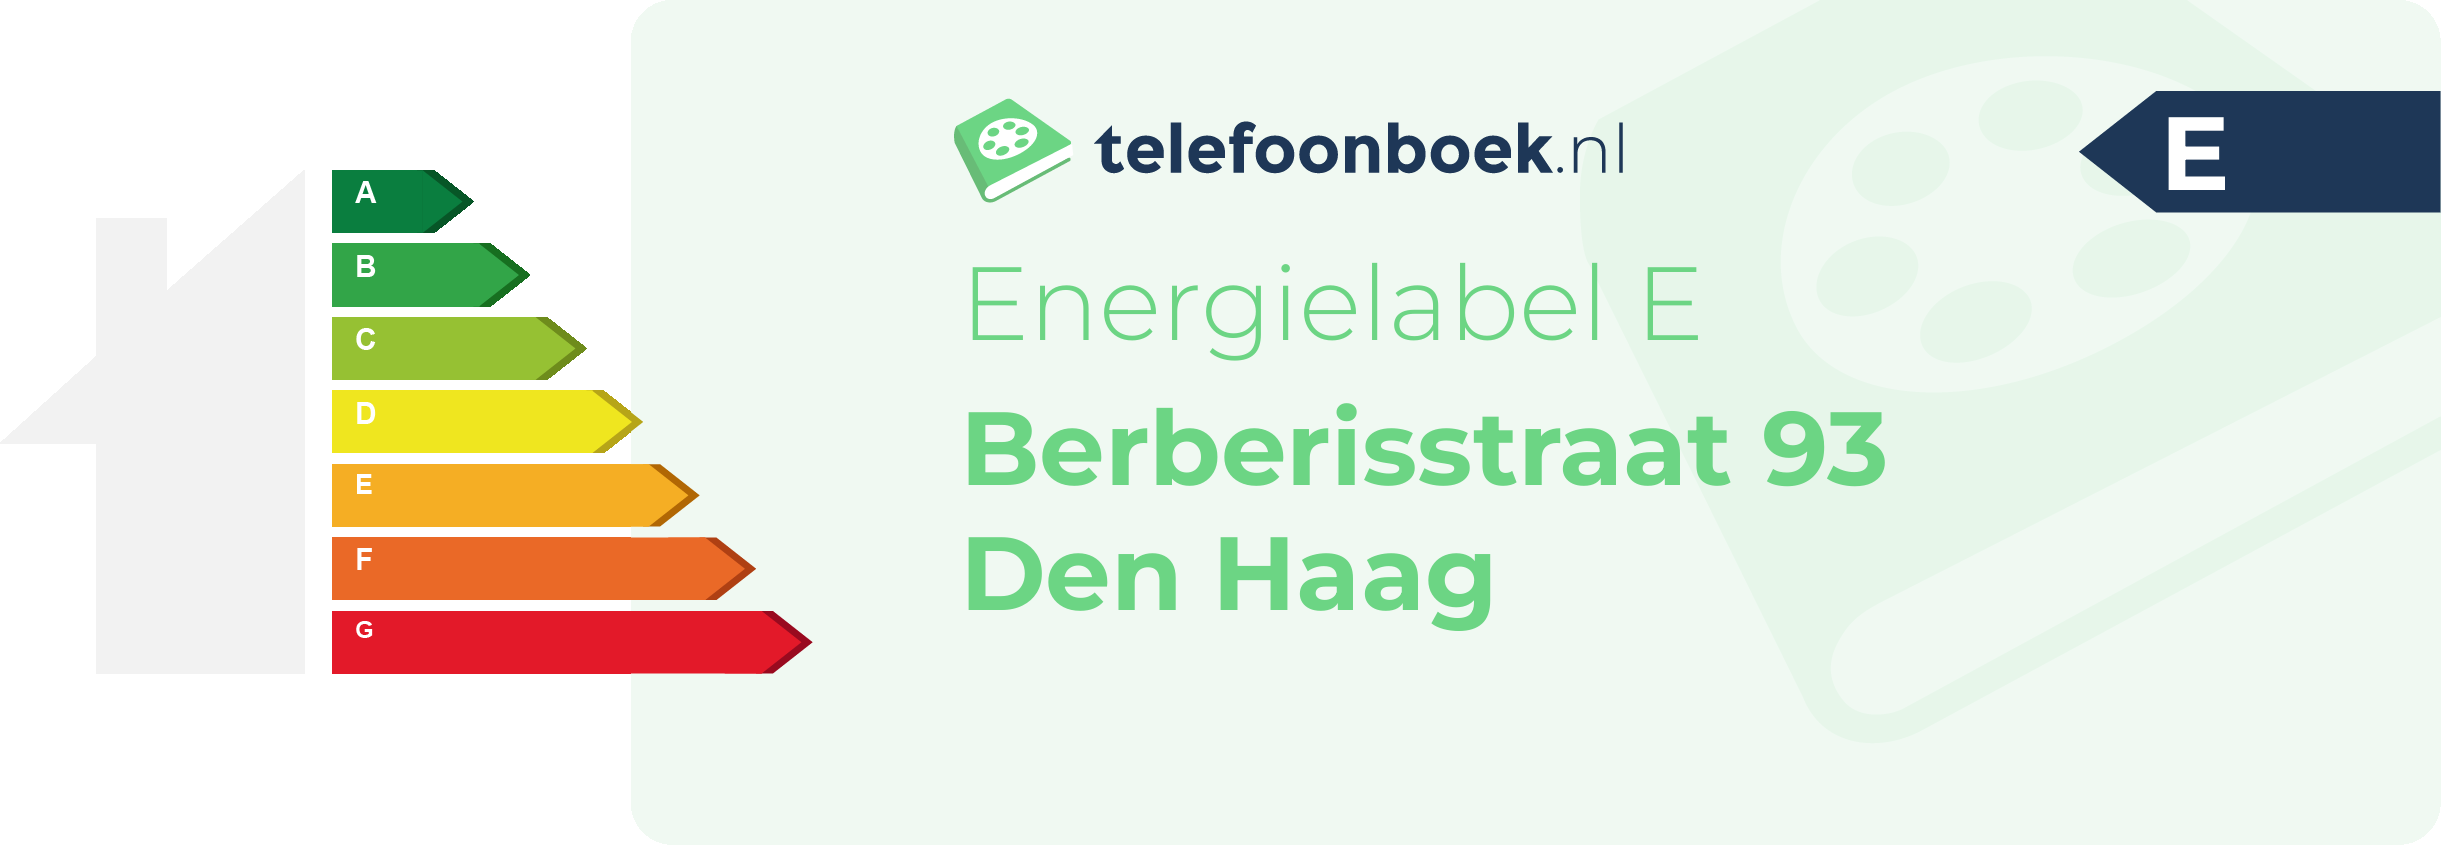 Energielabel Berberisstraat 93 Den Haag